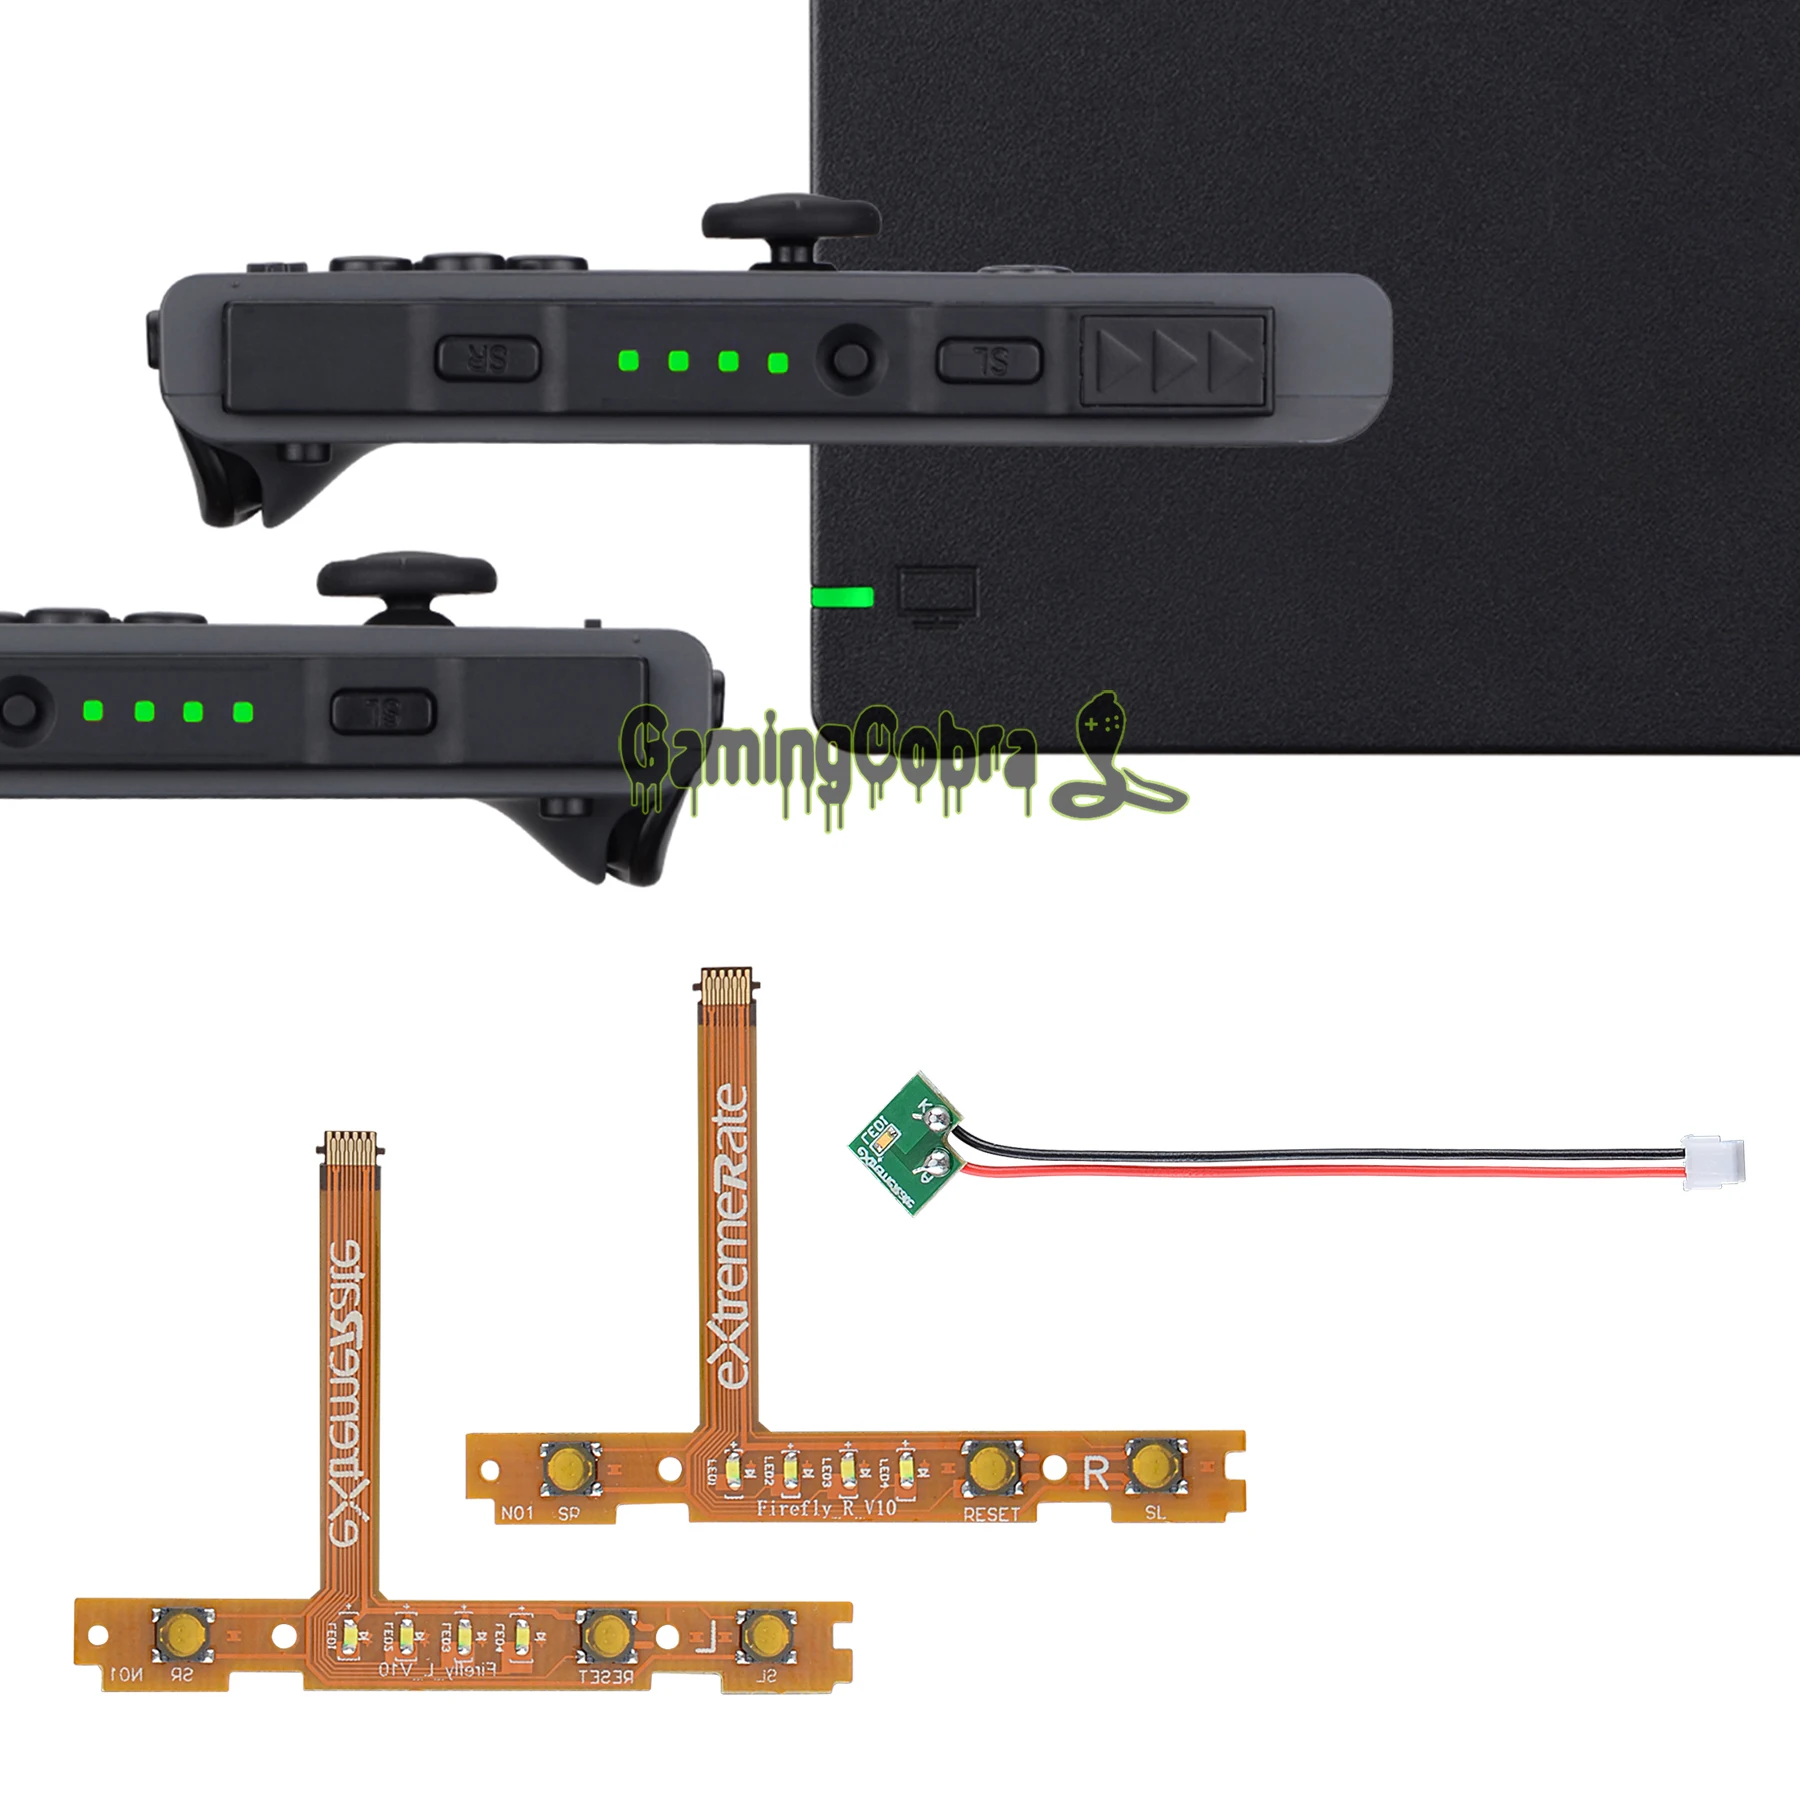 Tīra Zaļā SL, SR Pogas, kas Norāda Power Firefly LED Tūninga Komplekts par NS Slēdzis Joycons & Doks – Joycons & Doks, kas NAV Iekļauti